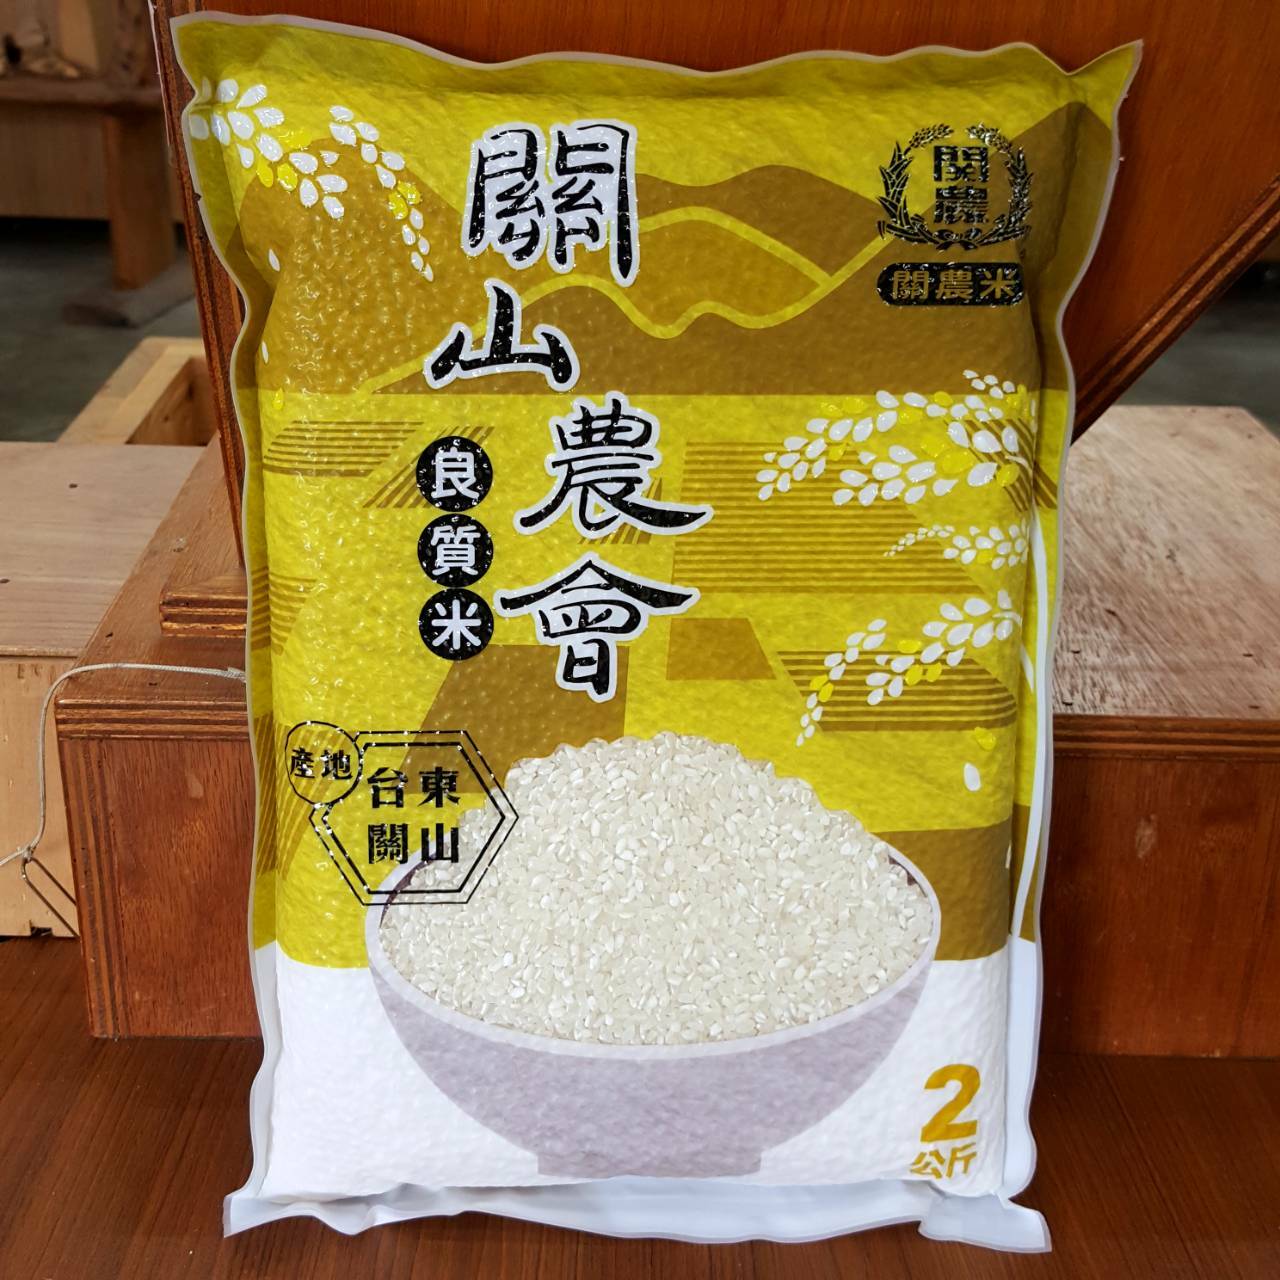 【關山鎮農會】 關農白米 (2kg×10包) – 💖108年臺東食材友善餐廳指定品牌💖